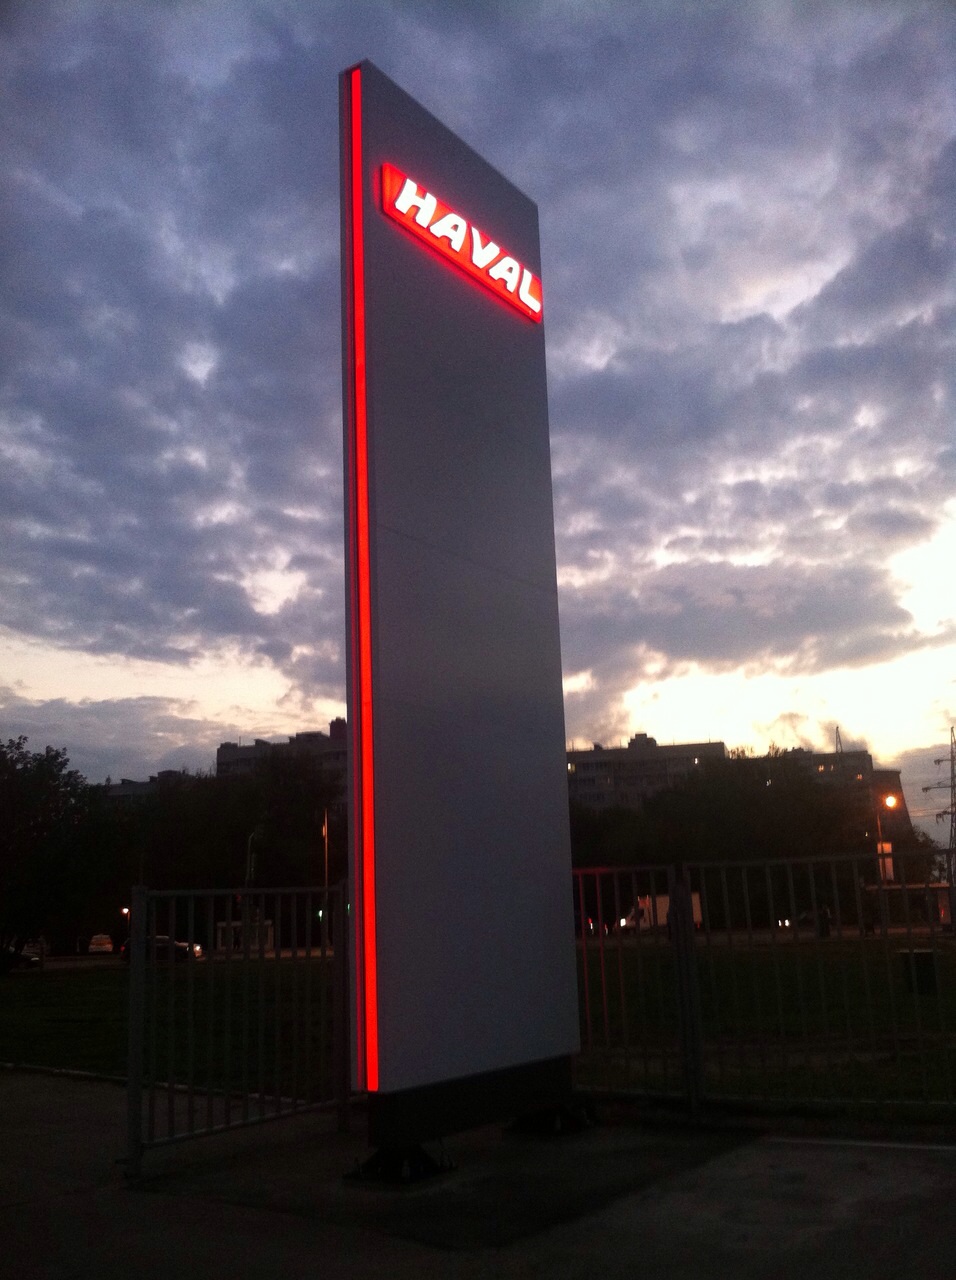 Рекламная стелла Haval, высотой 9 метров, выполнена из композитного материала, логотип формованный со светодиодной подсветкой